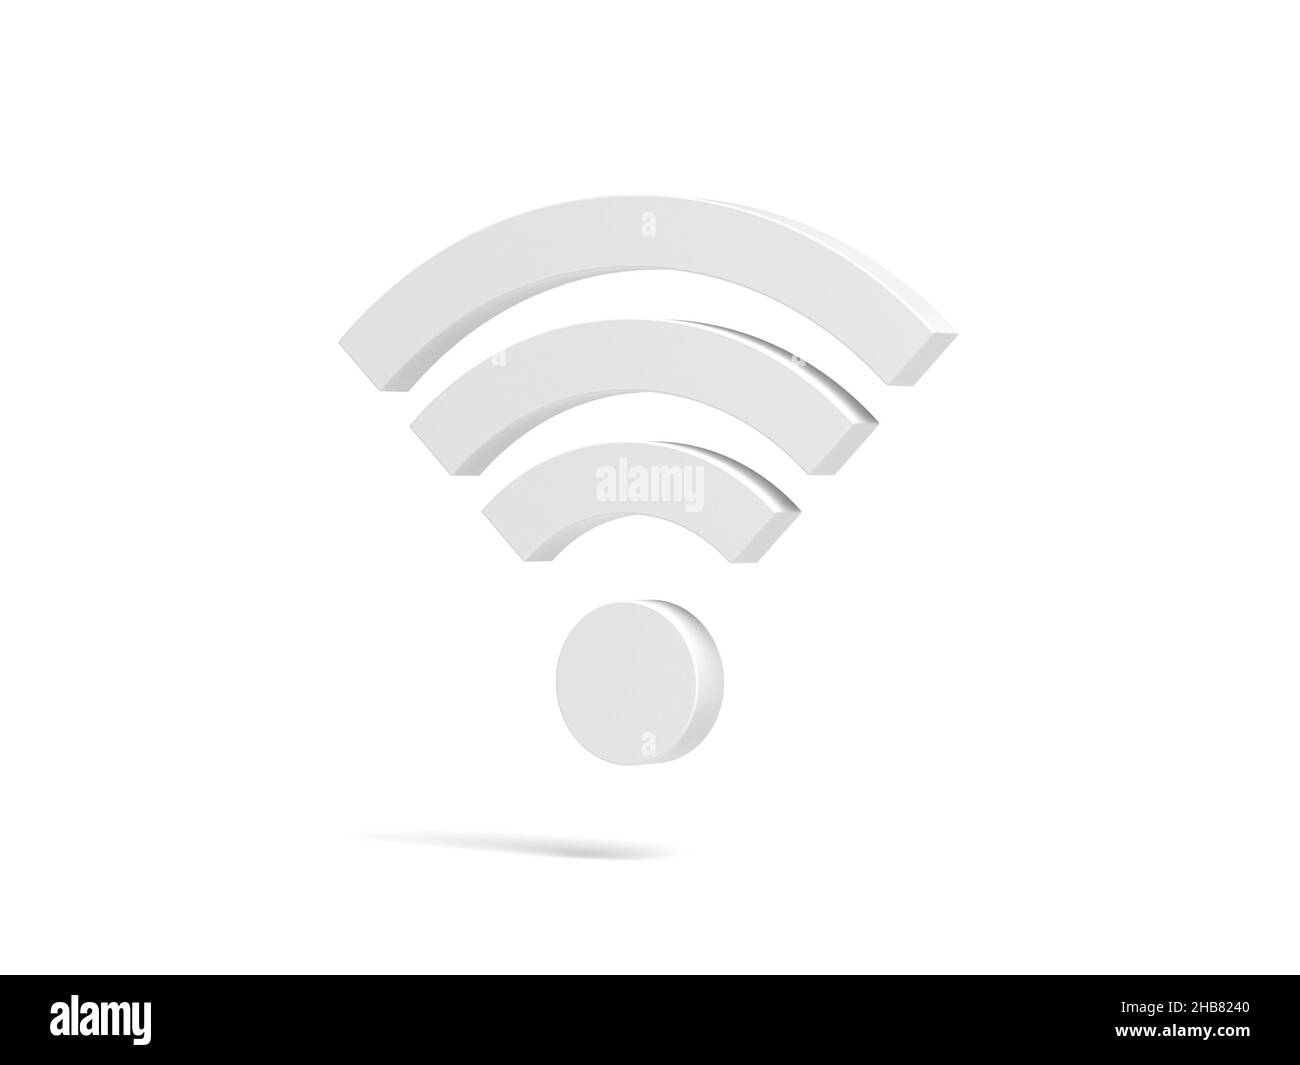 Wi-Fi symbol isolated on white background. 3d illustration. Stock Photo